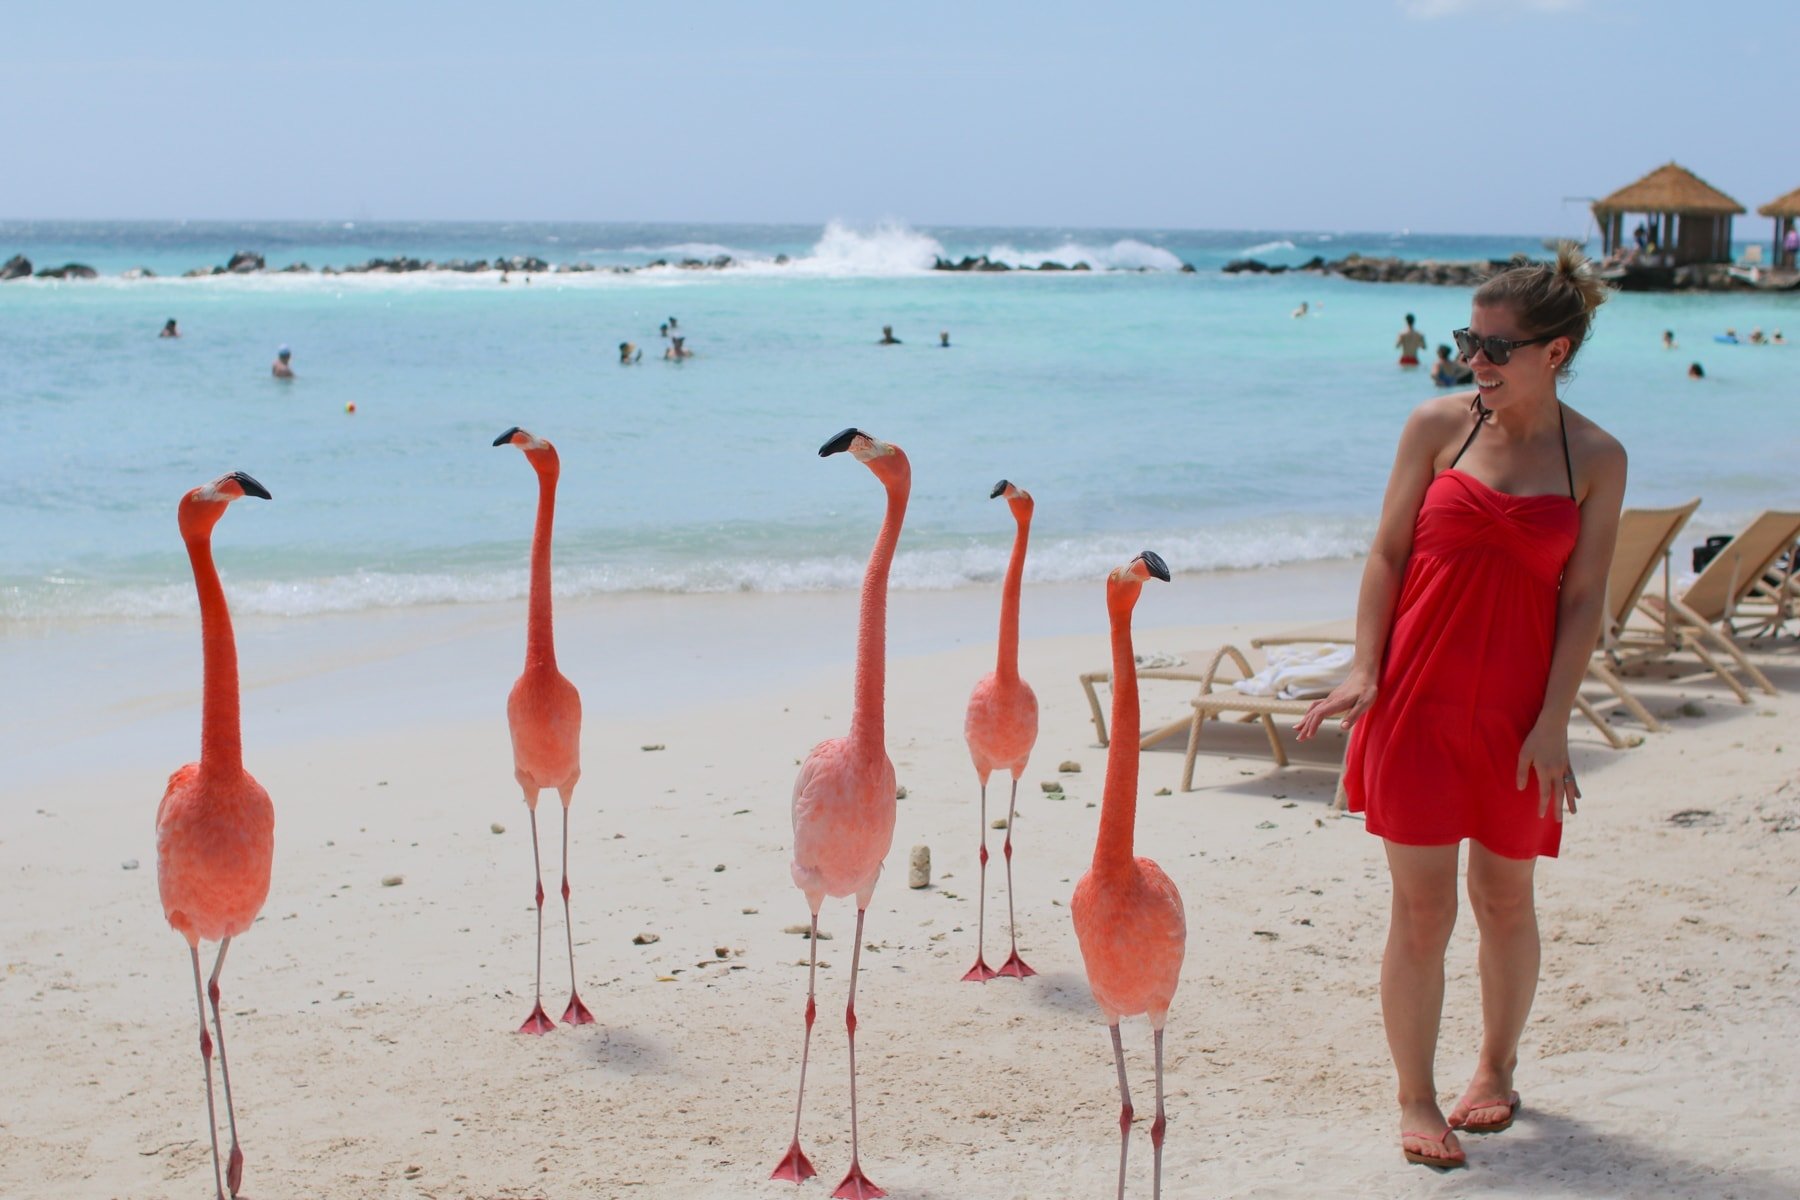 Lauren next to flamingos